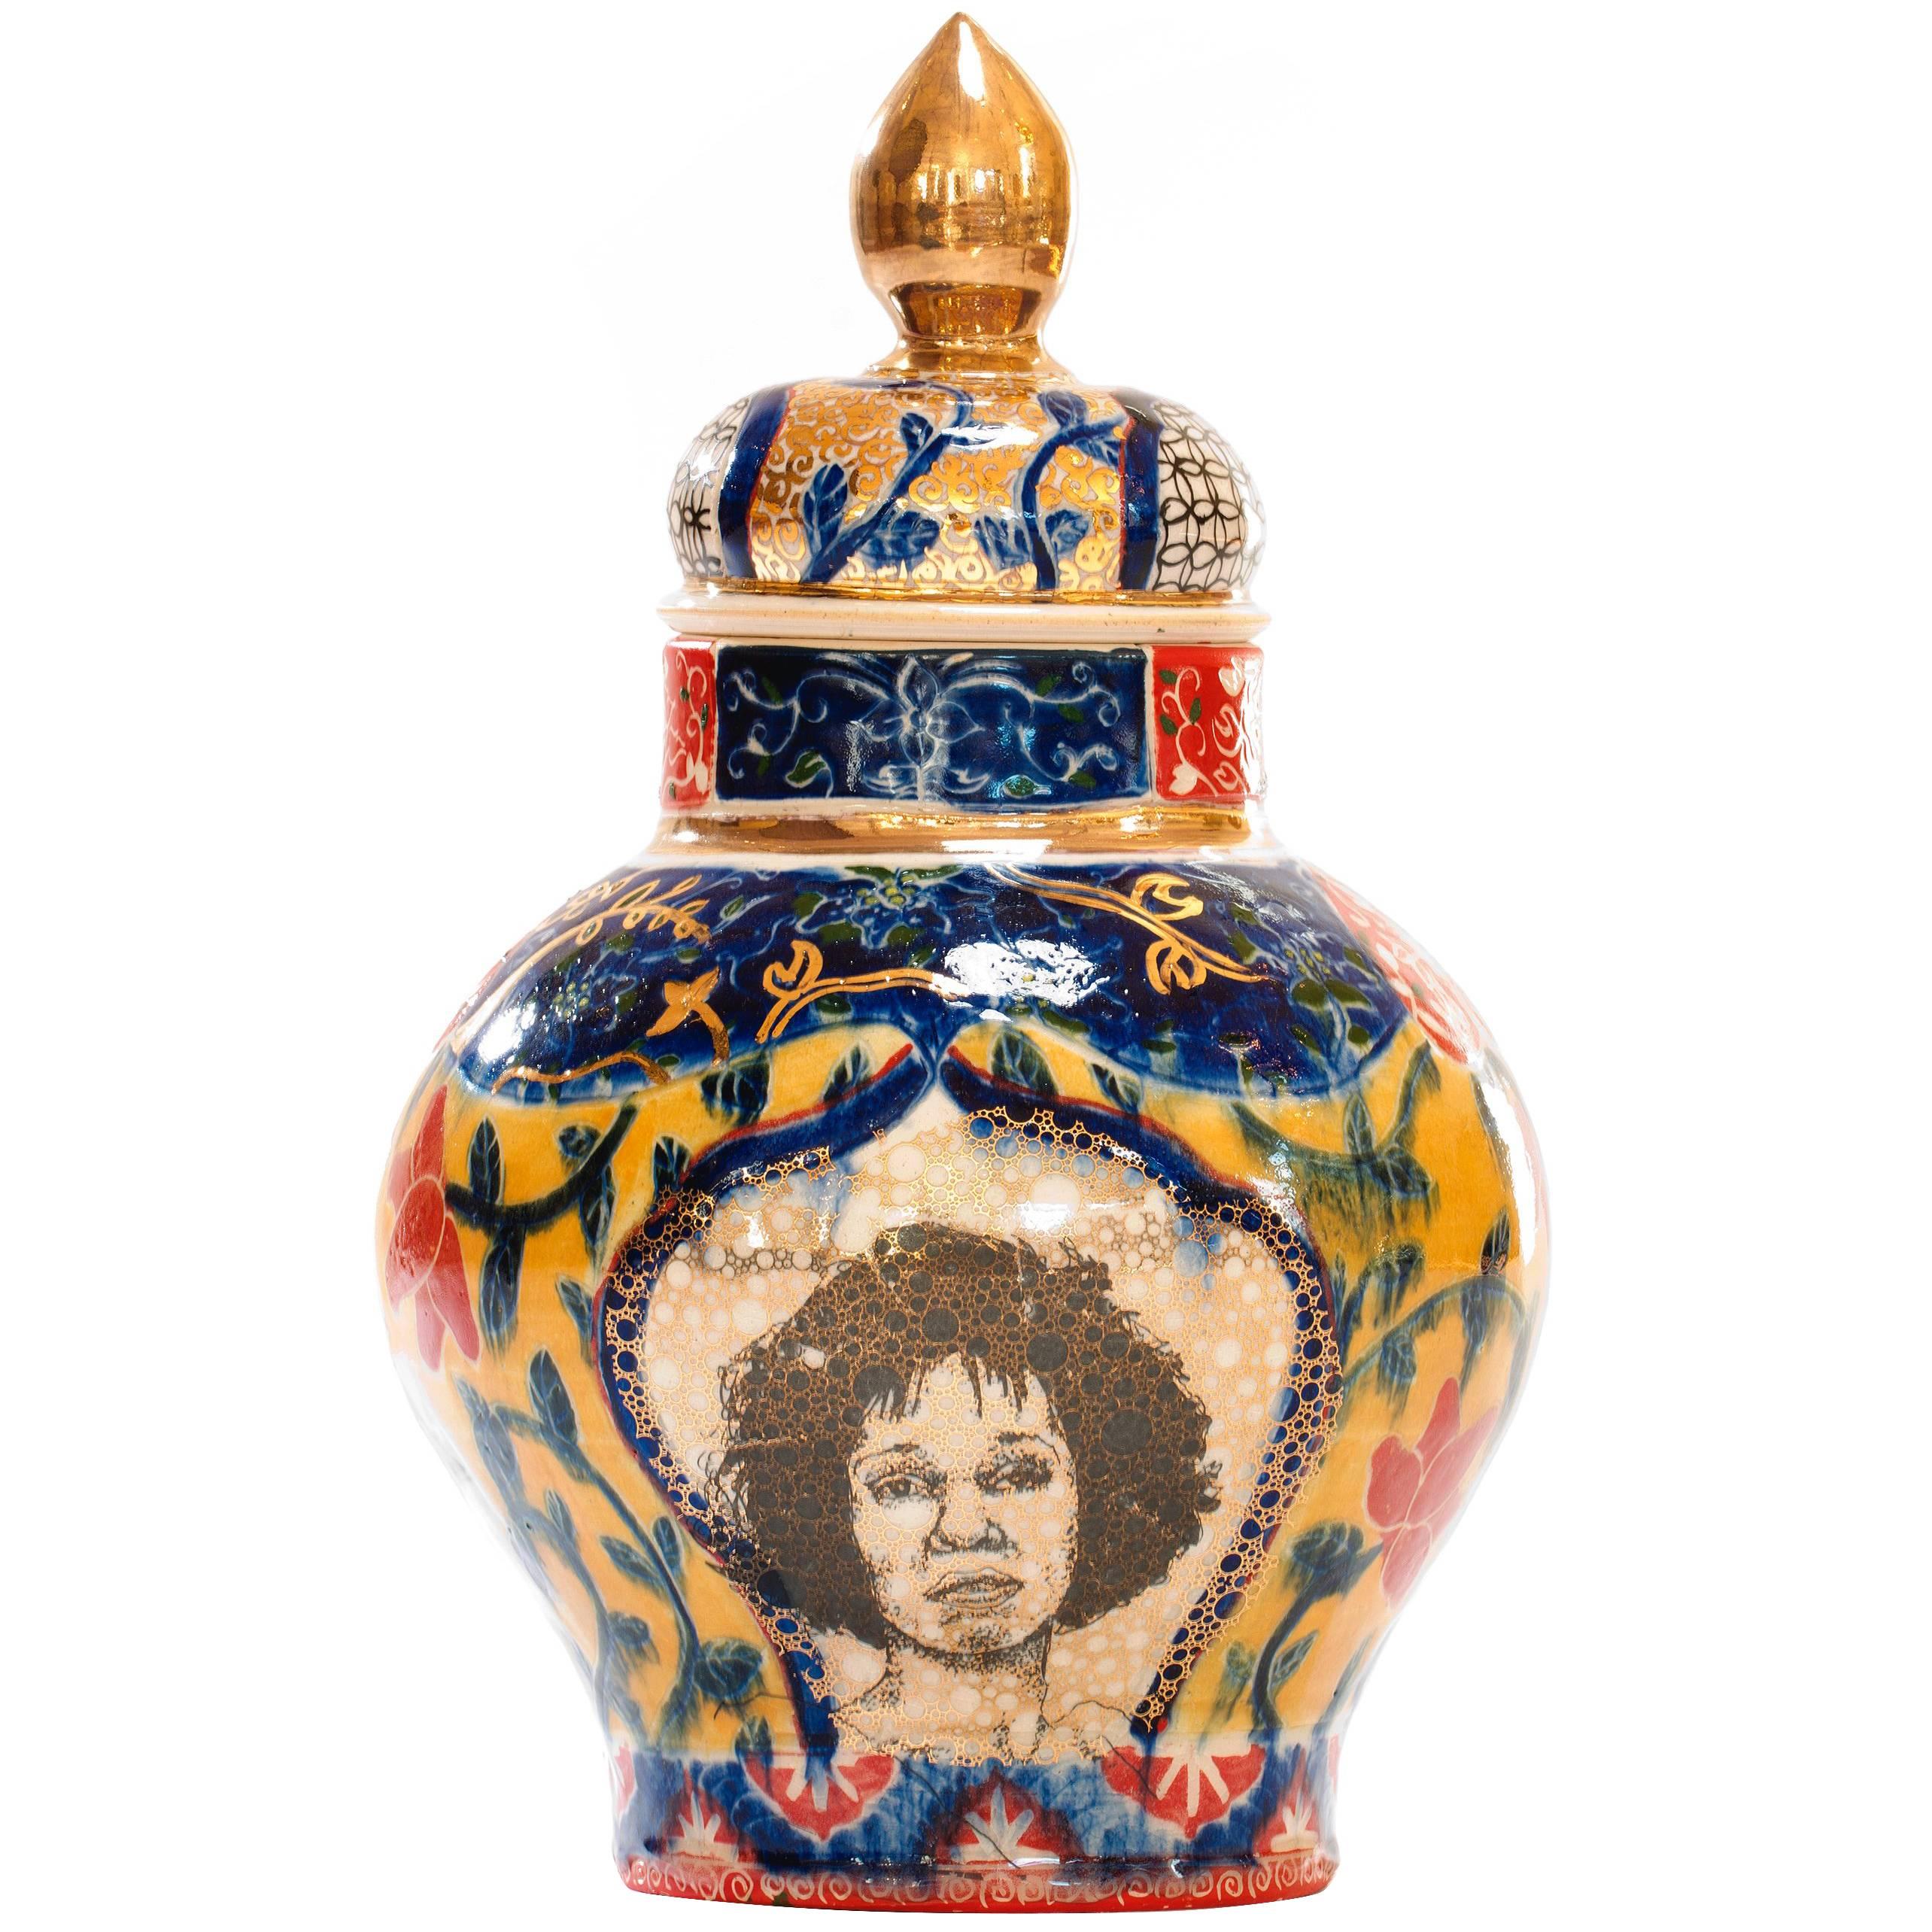 Contemporary Whitney Houston / Shirley Chisholm Decorative Porcelain Urn